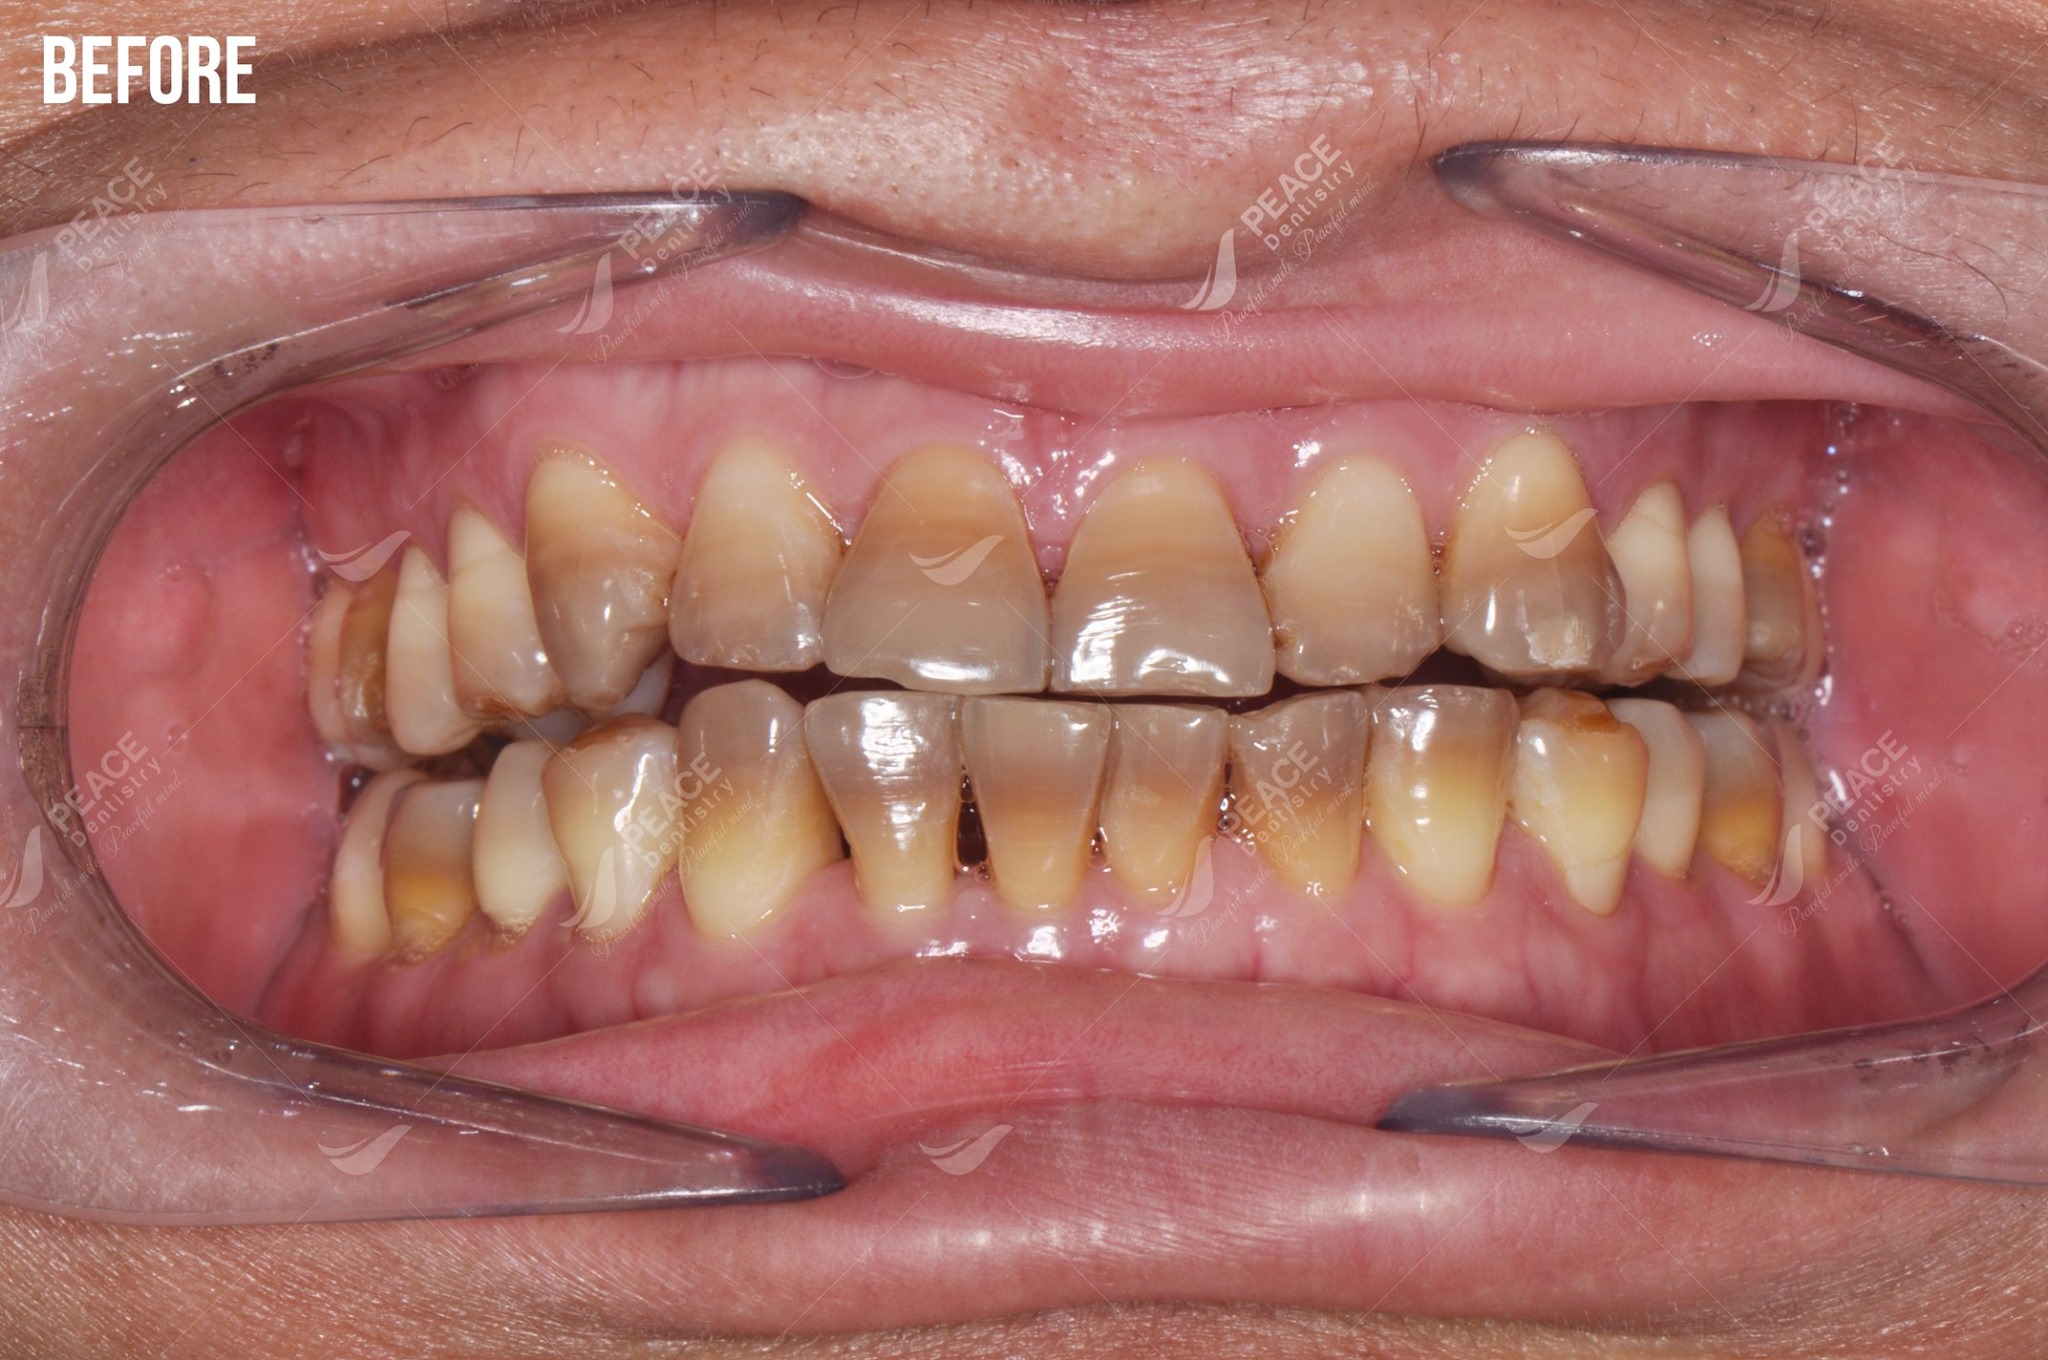 răng nhiễm tetracycline trước khi bọc sứ